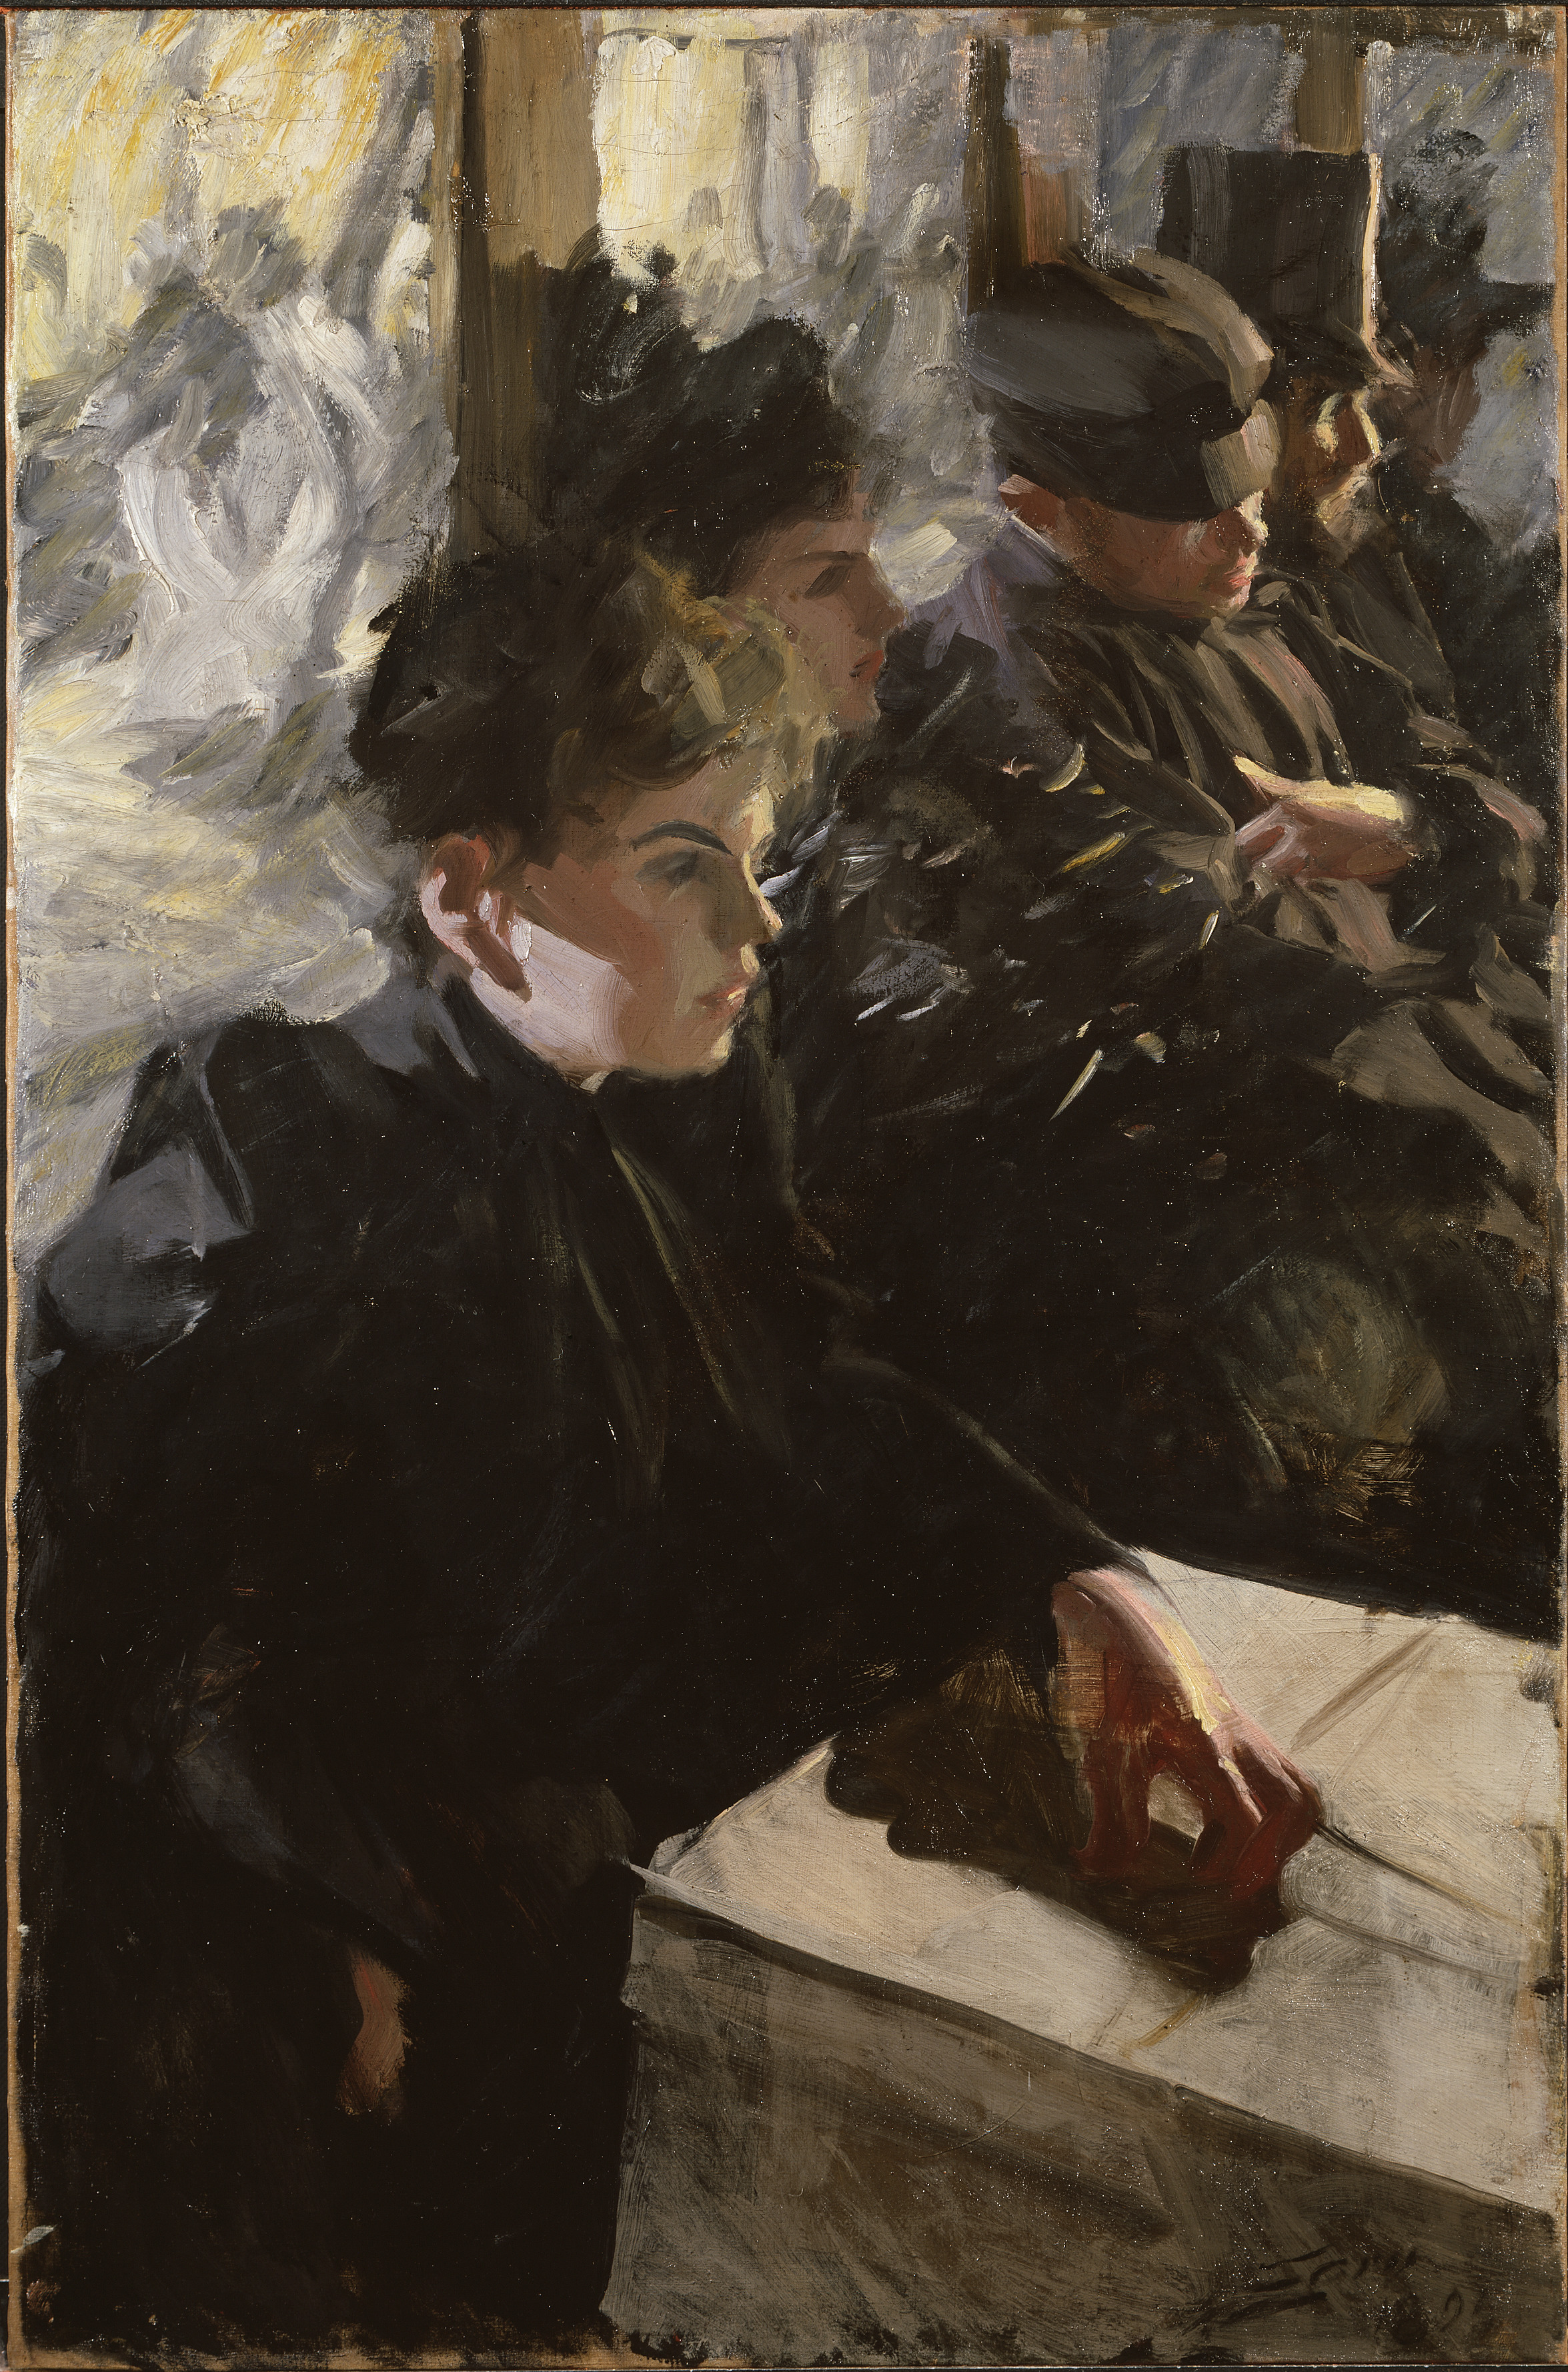 옴니버스 1 by Anders Zorn - 1895 or 1892 - 114 x 79 x 7 cm 